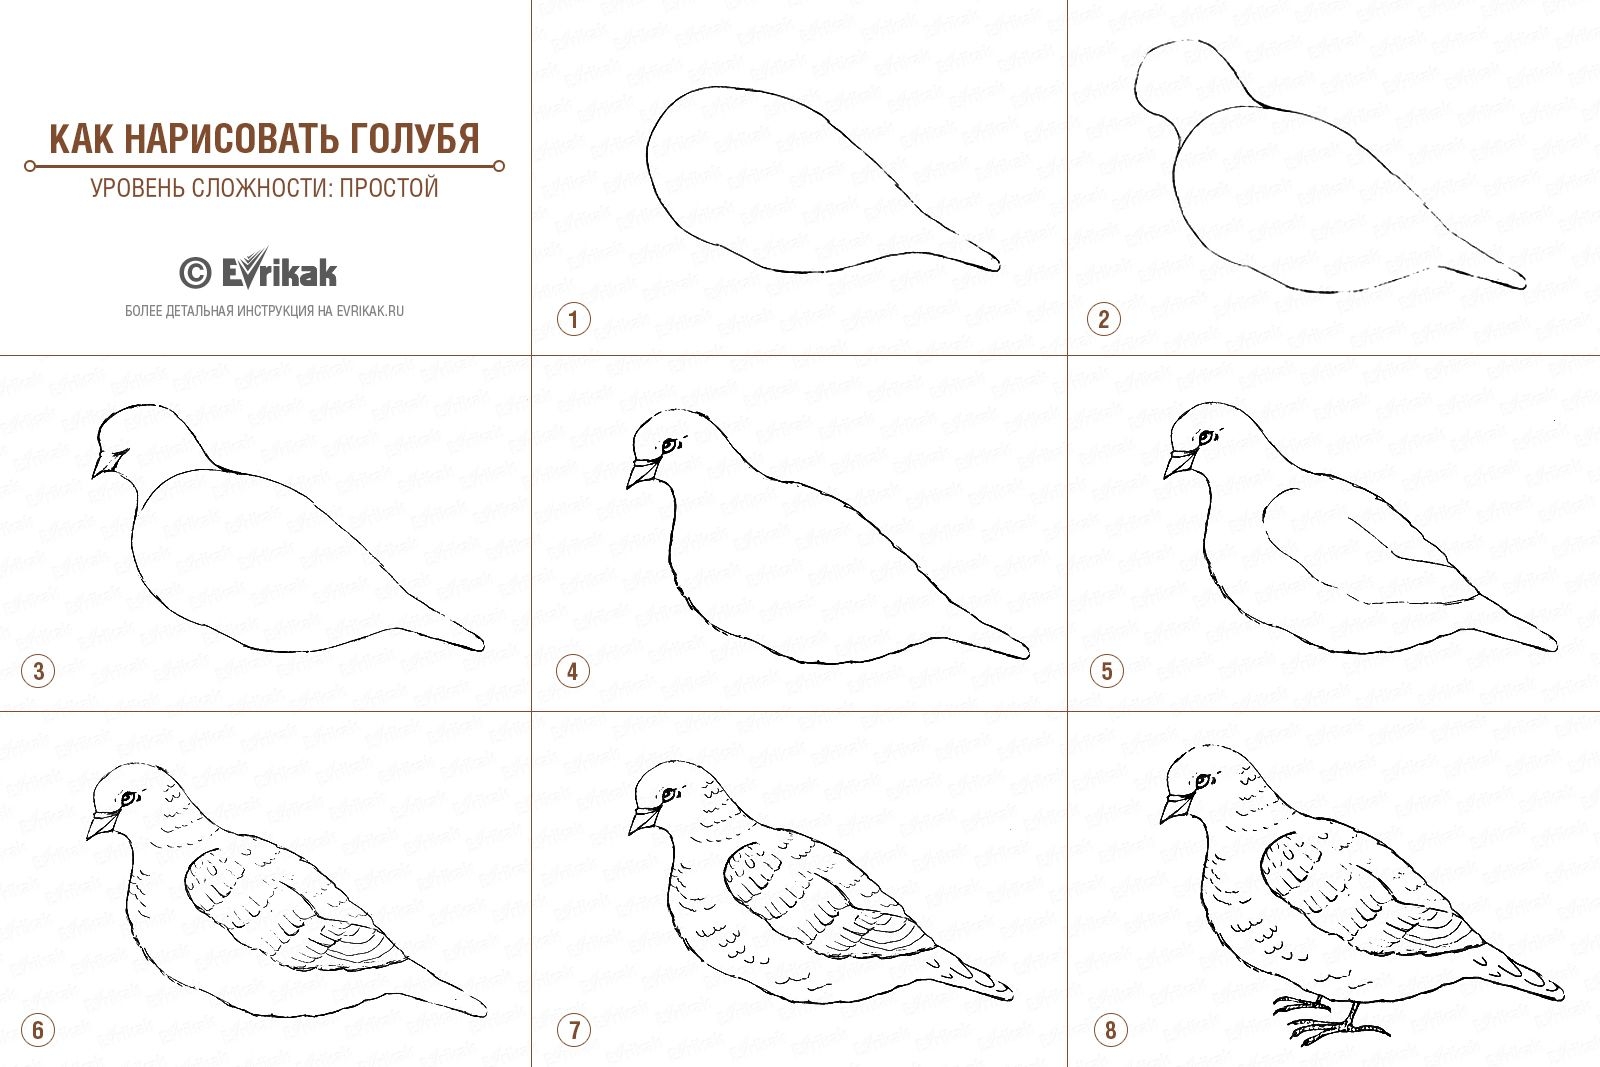 Как нарисовать голубя поэтапно в 5 шагов